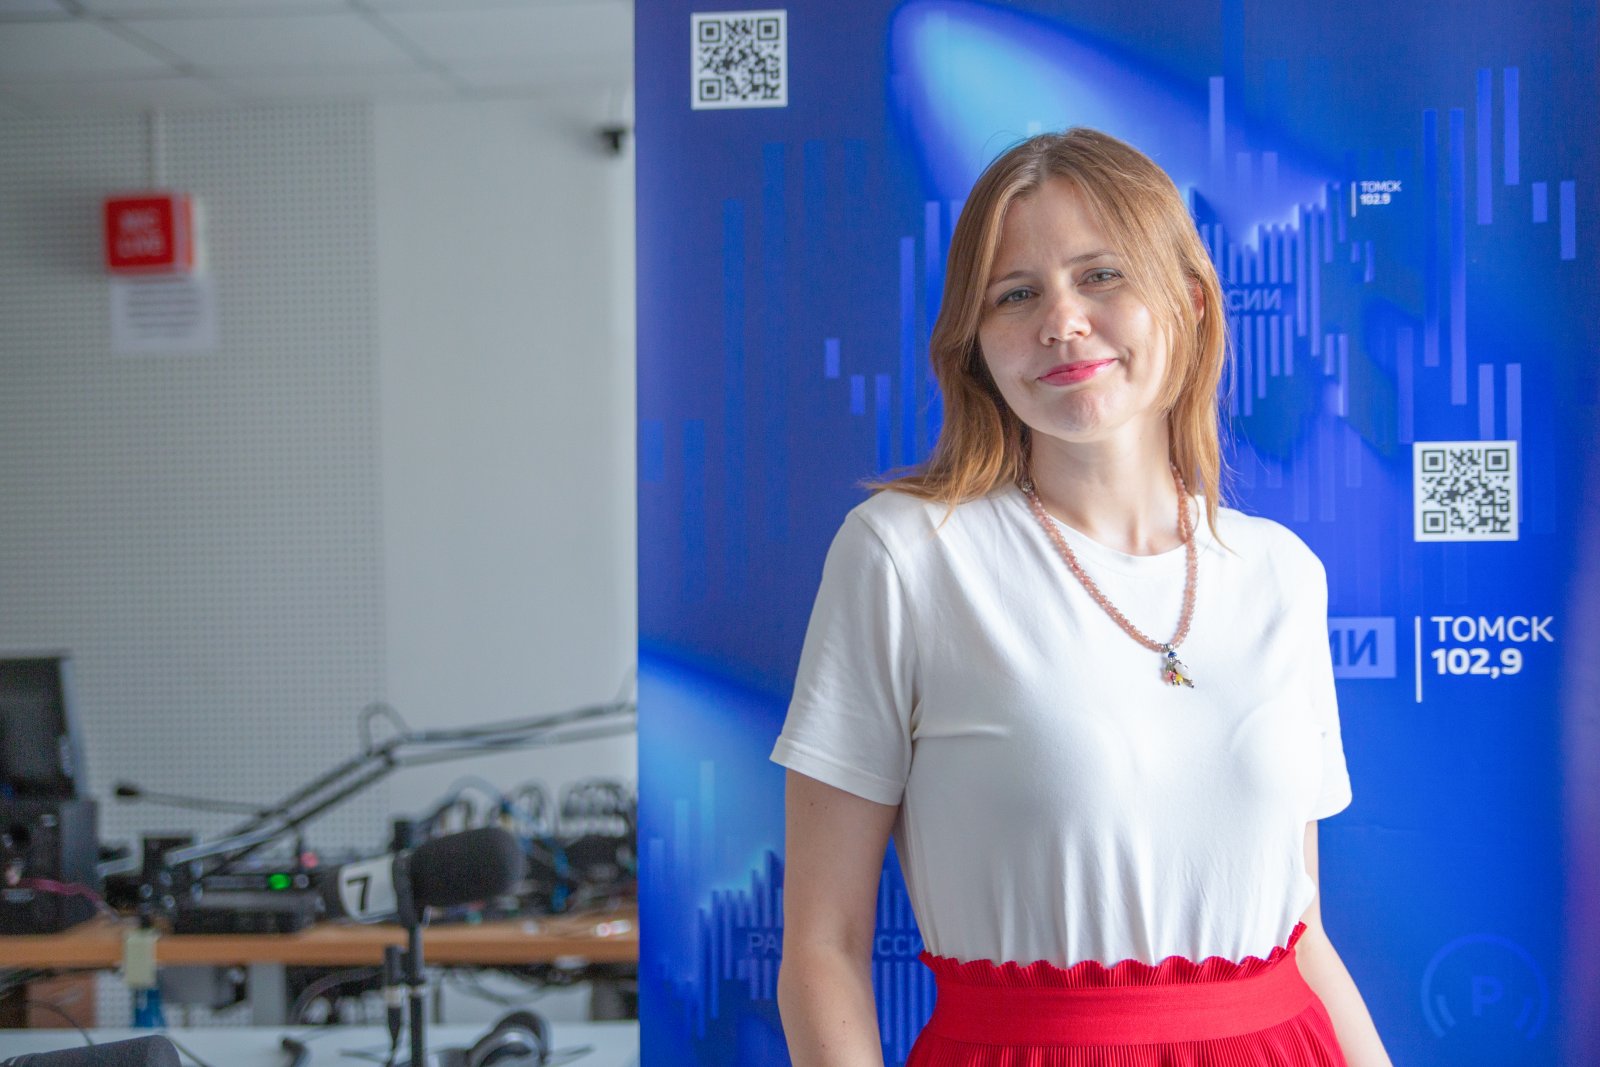 Наталья Емелина, ведущий программы службы радиовещания ГТРК "Томск"